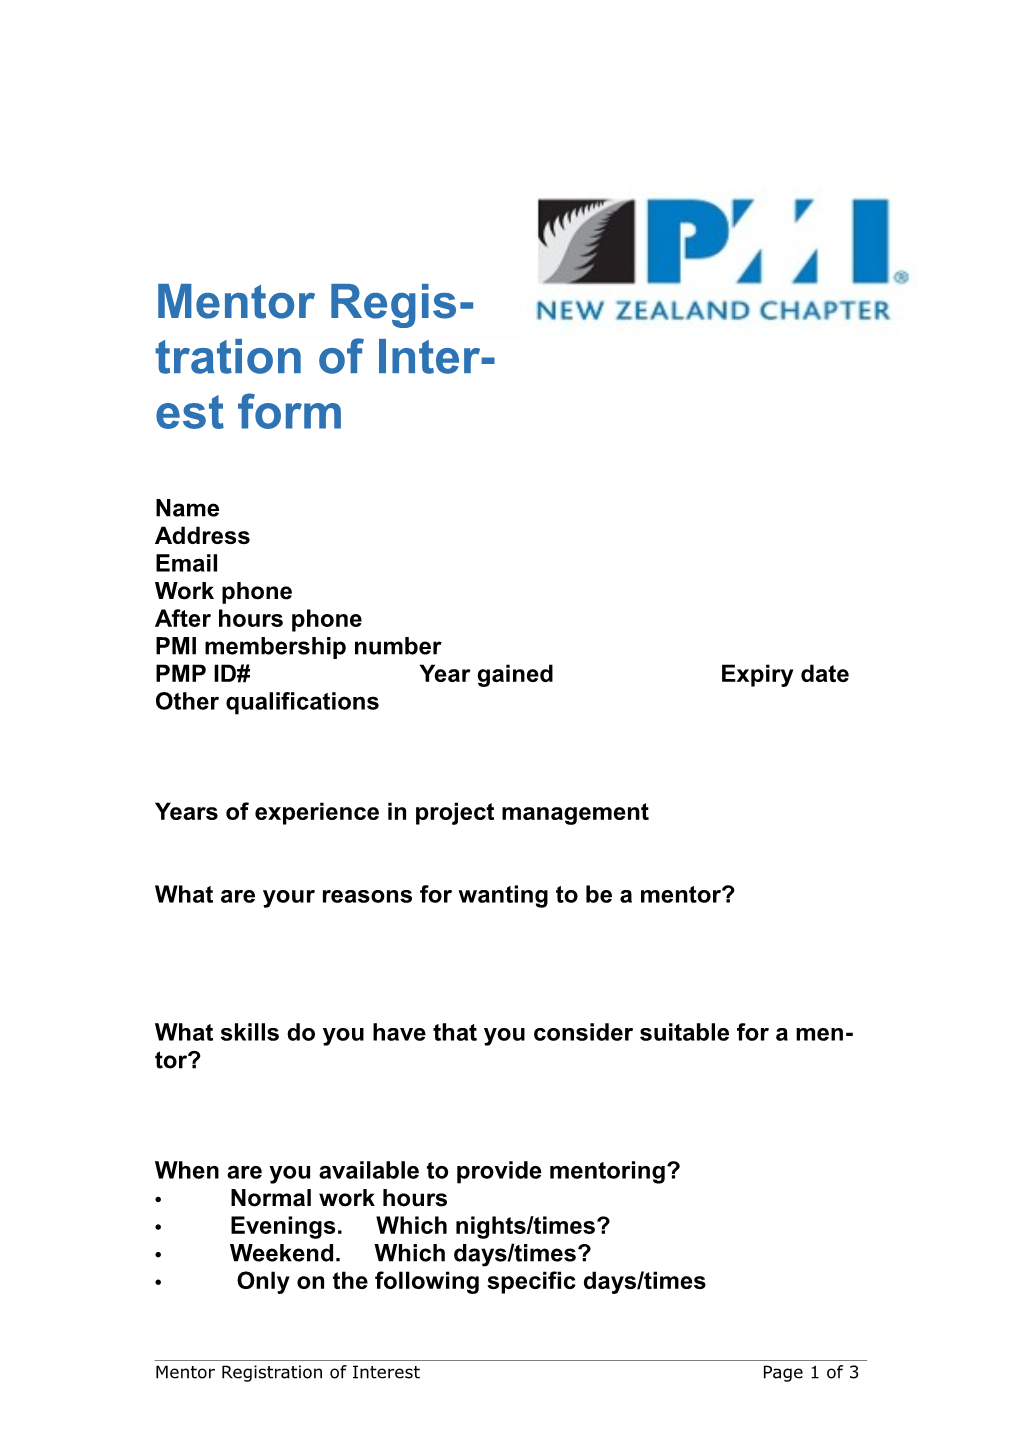 Mentor Registration of Interest Form